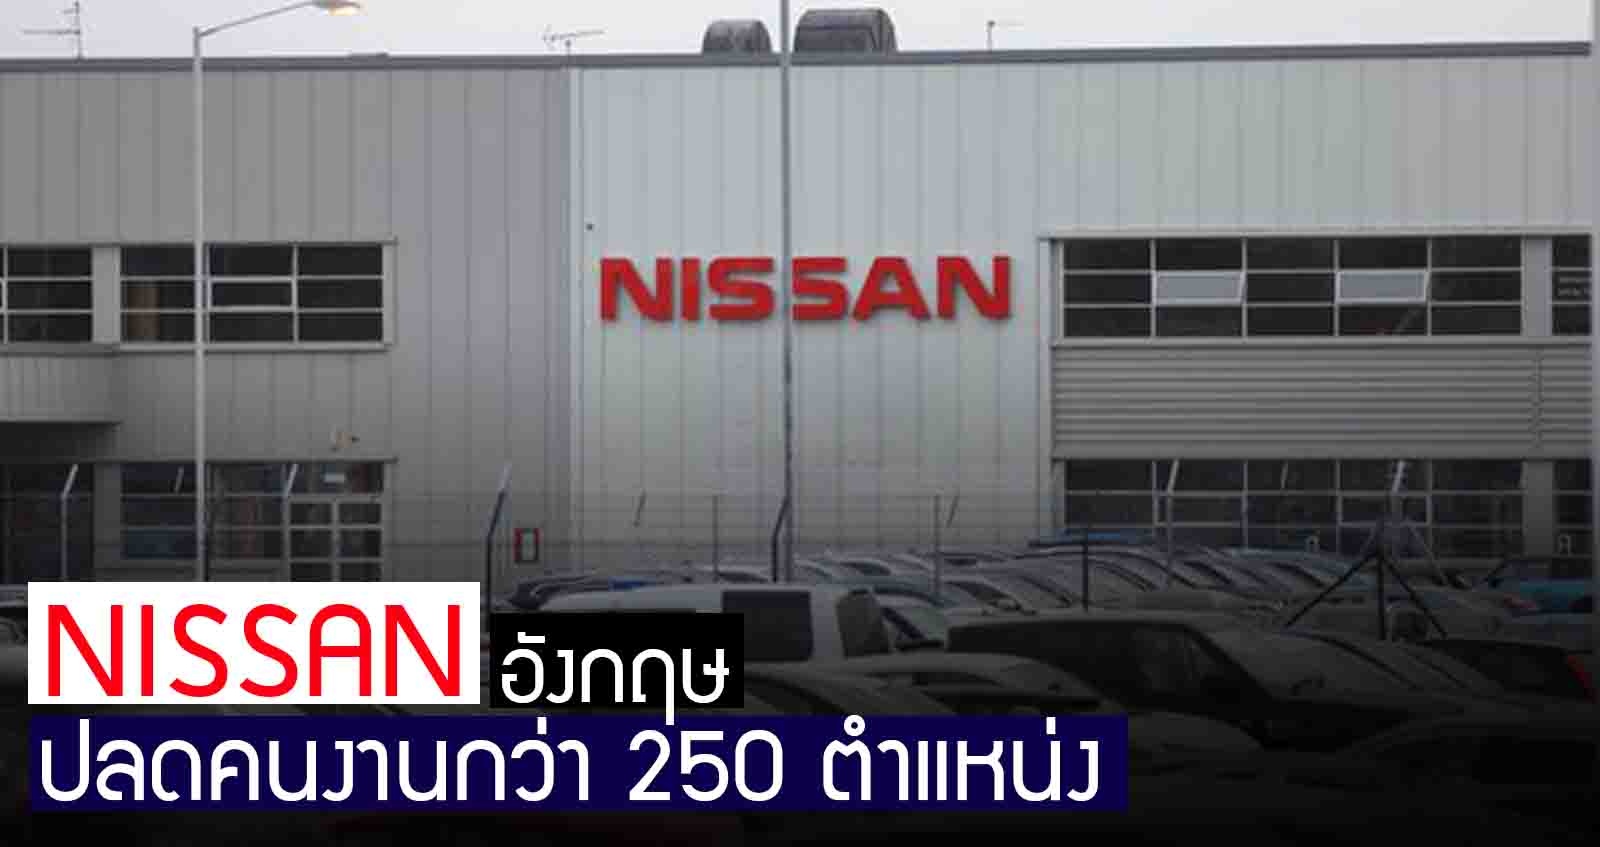 Nissan ปลดคนงาน 248 ตำแหน่งในโรงงานอังกฤษ